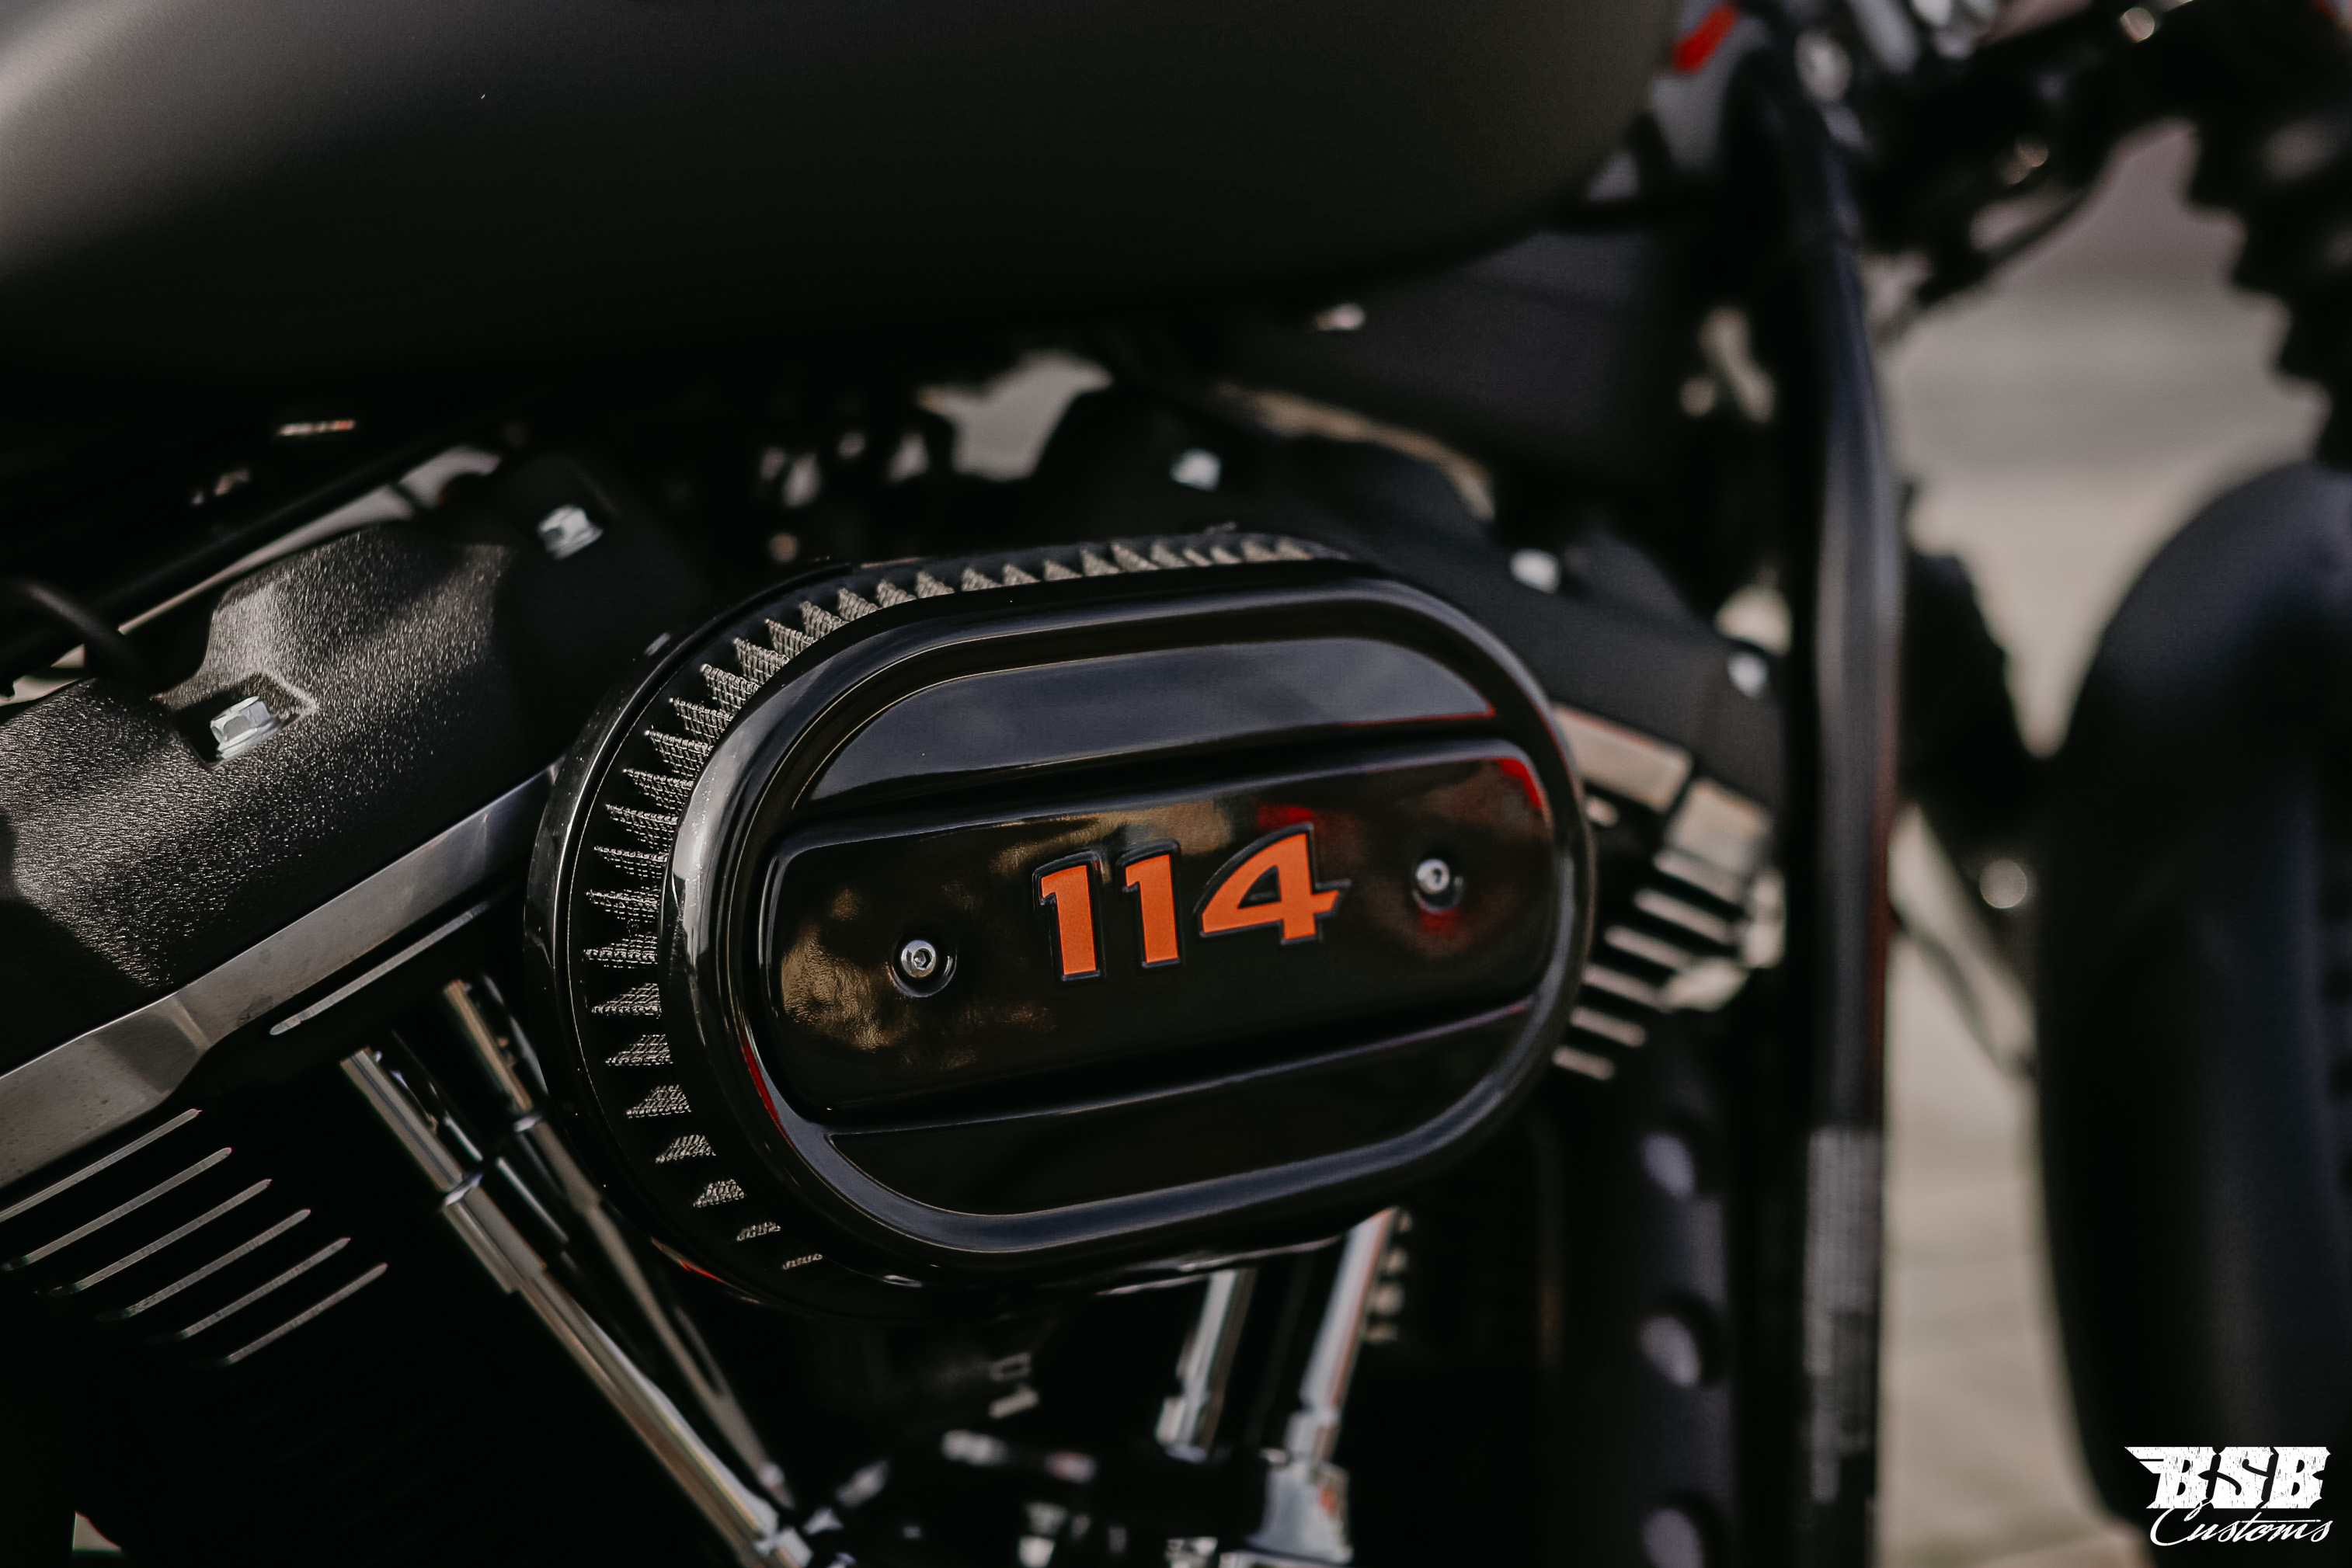 2020 Harley Davidson FXBB Softail Milwaukee-Eight mit 200 Umbau/ Jekill&Hyde + Garantie